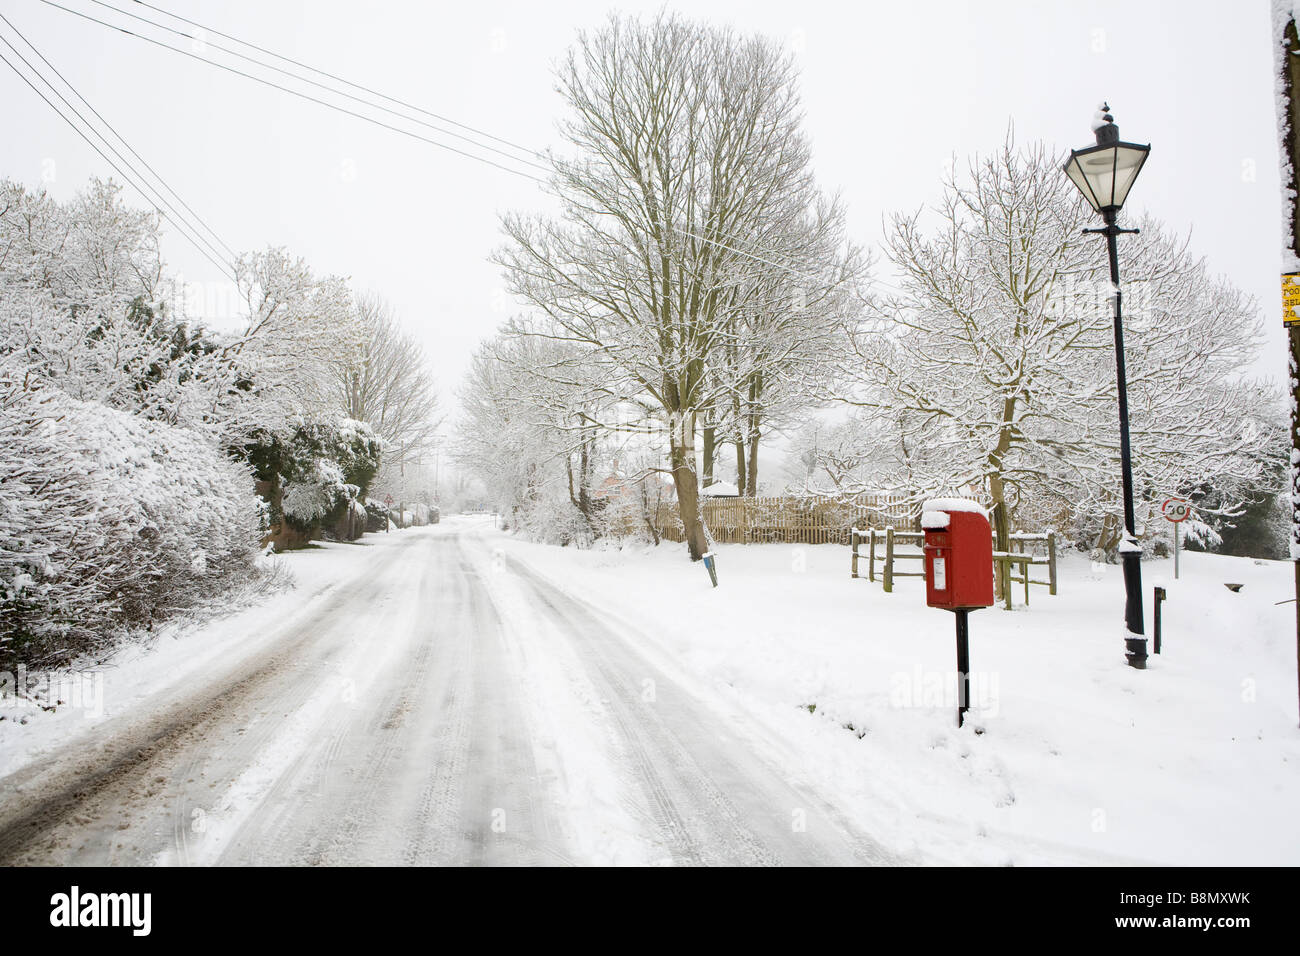 Royal Mail post box rouge et lampe de style traditionnel dans le village de Buckinghamshire couvertes de neige Askett. Banque D'Images